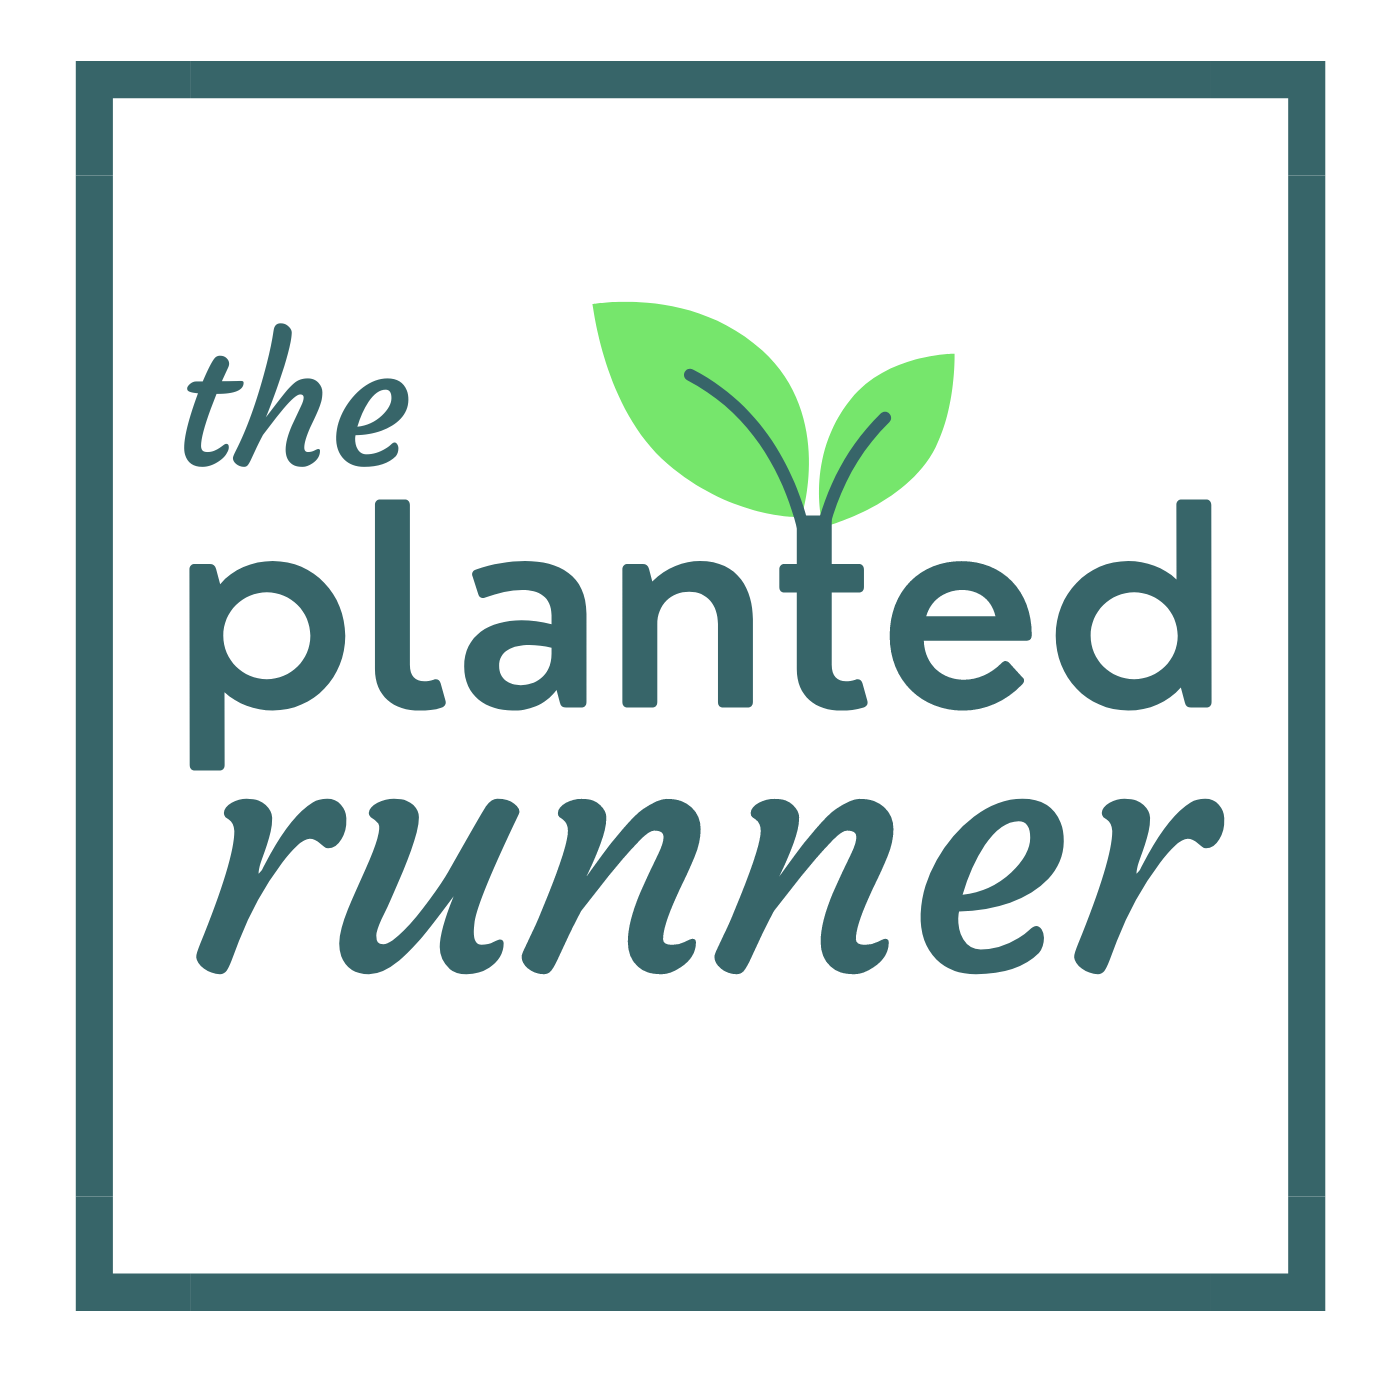 the planted runner logo